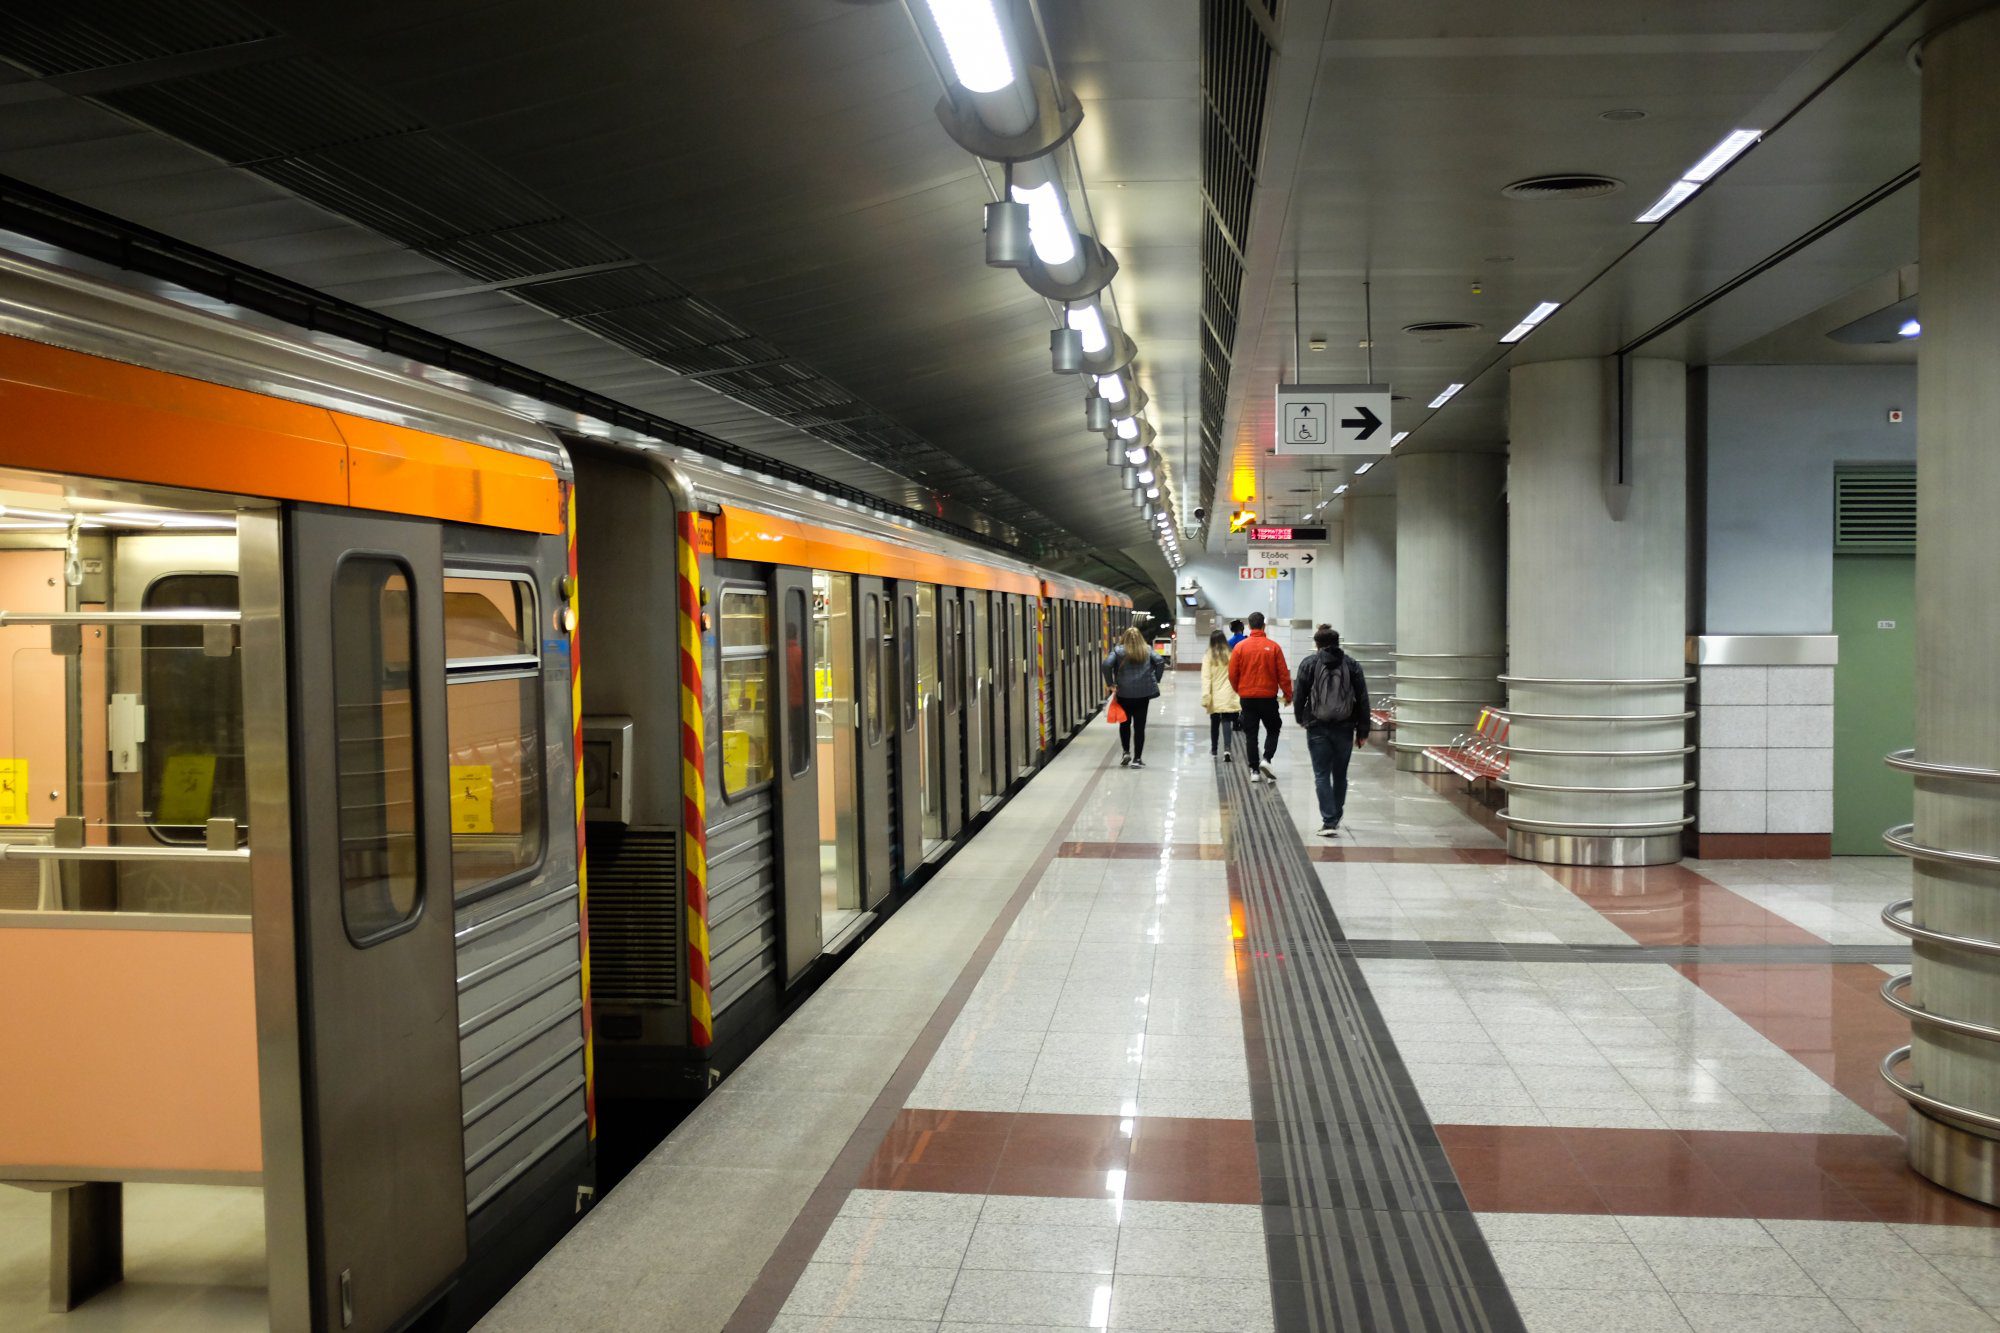 Πτώση ατόμου στις γραμμές του Μετρό – Διακόπηκε η κυκλοφορία